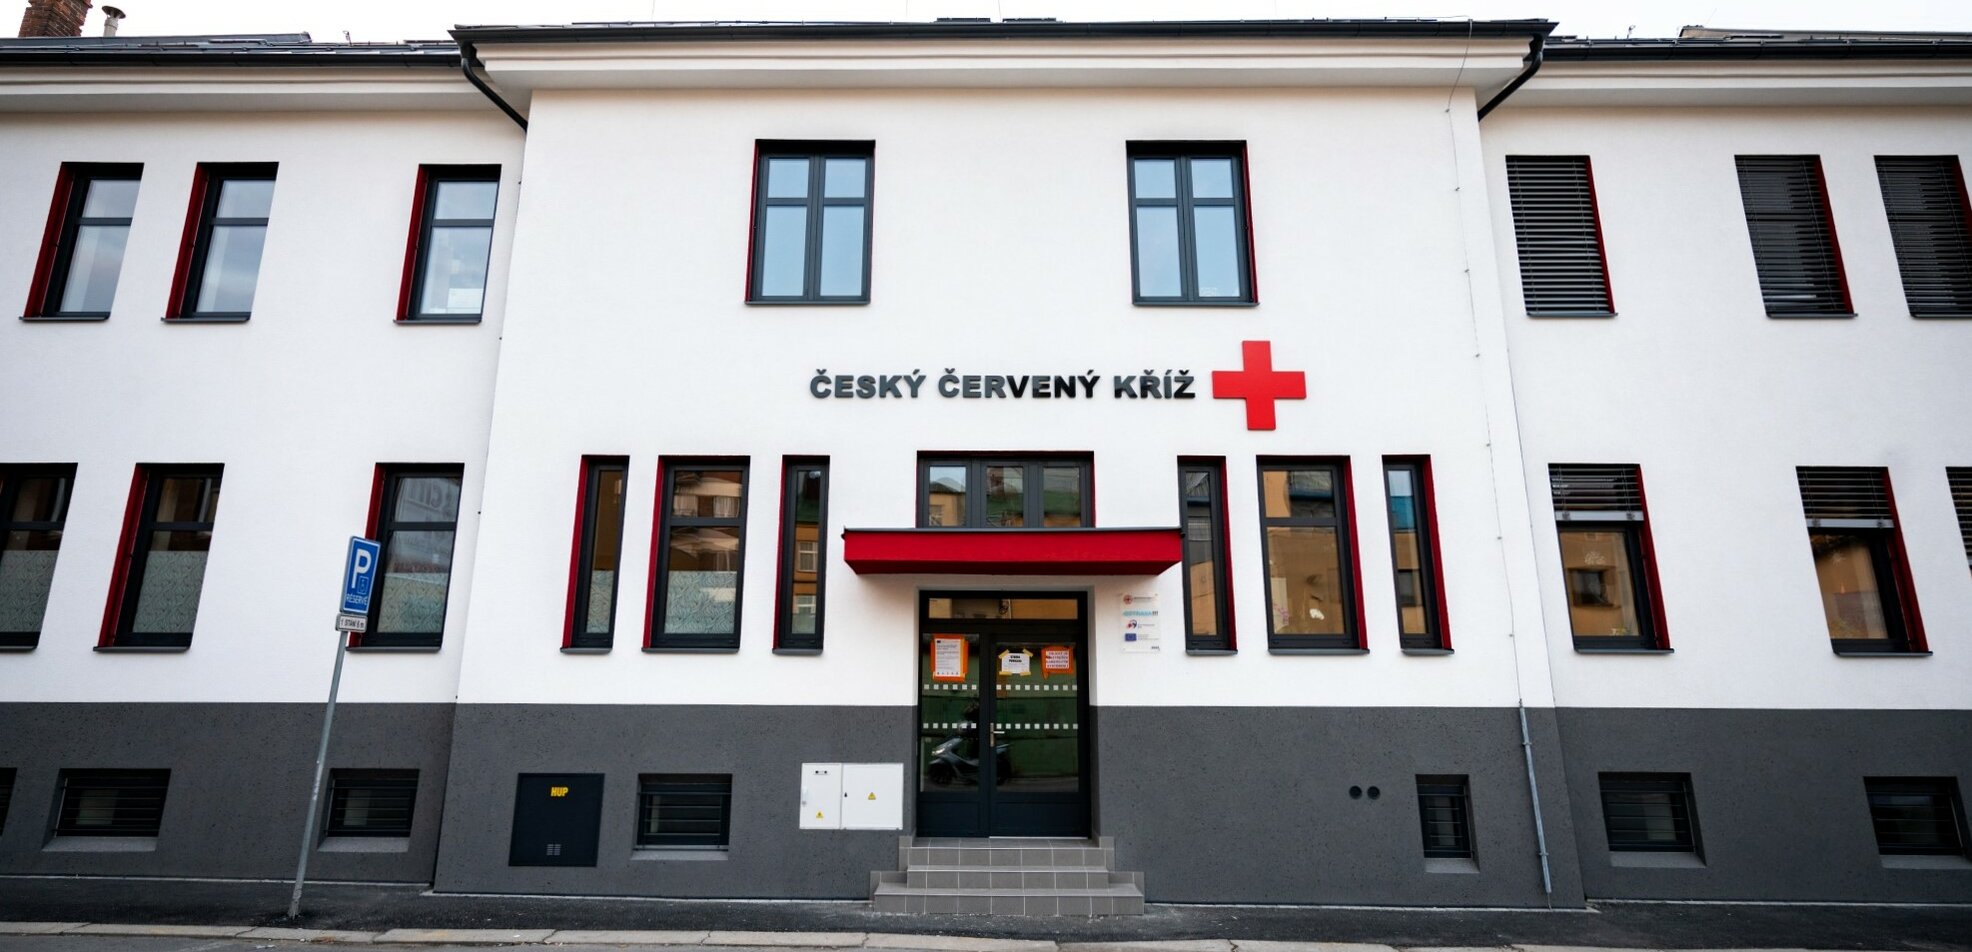 Oblastní spolek Českého červeného kříže Ostrava